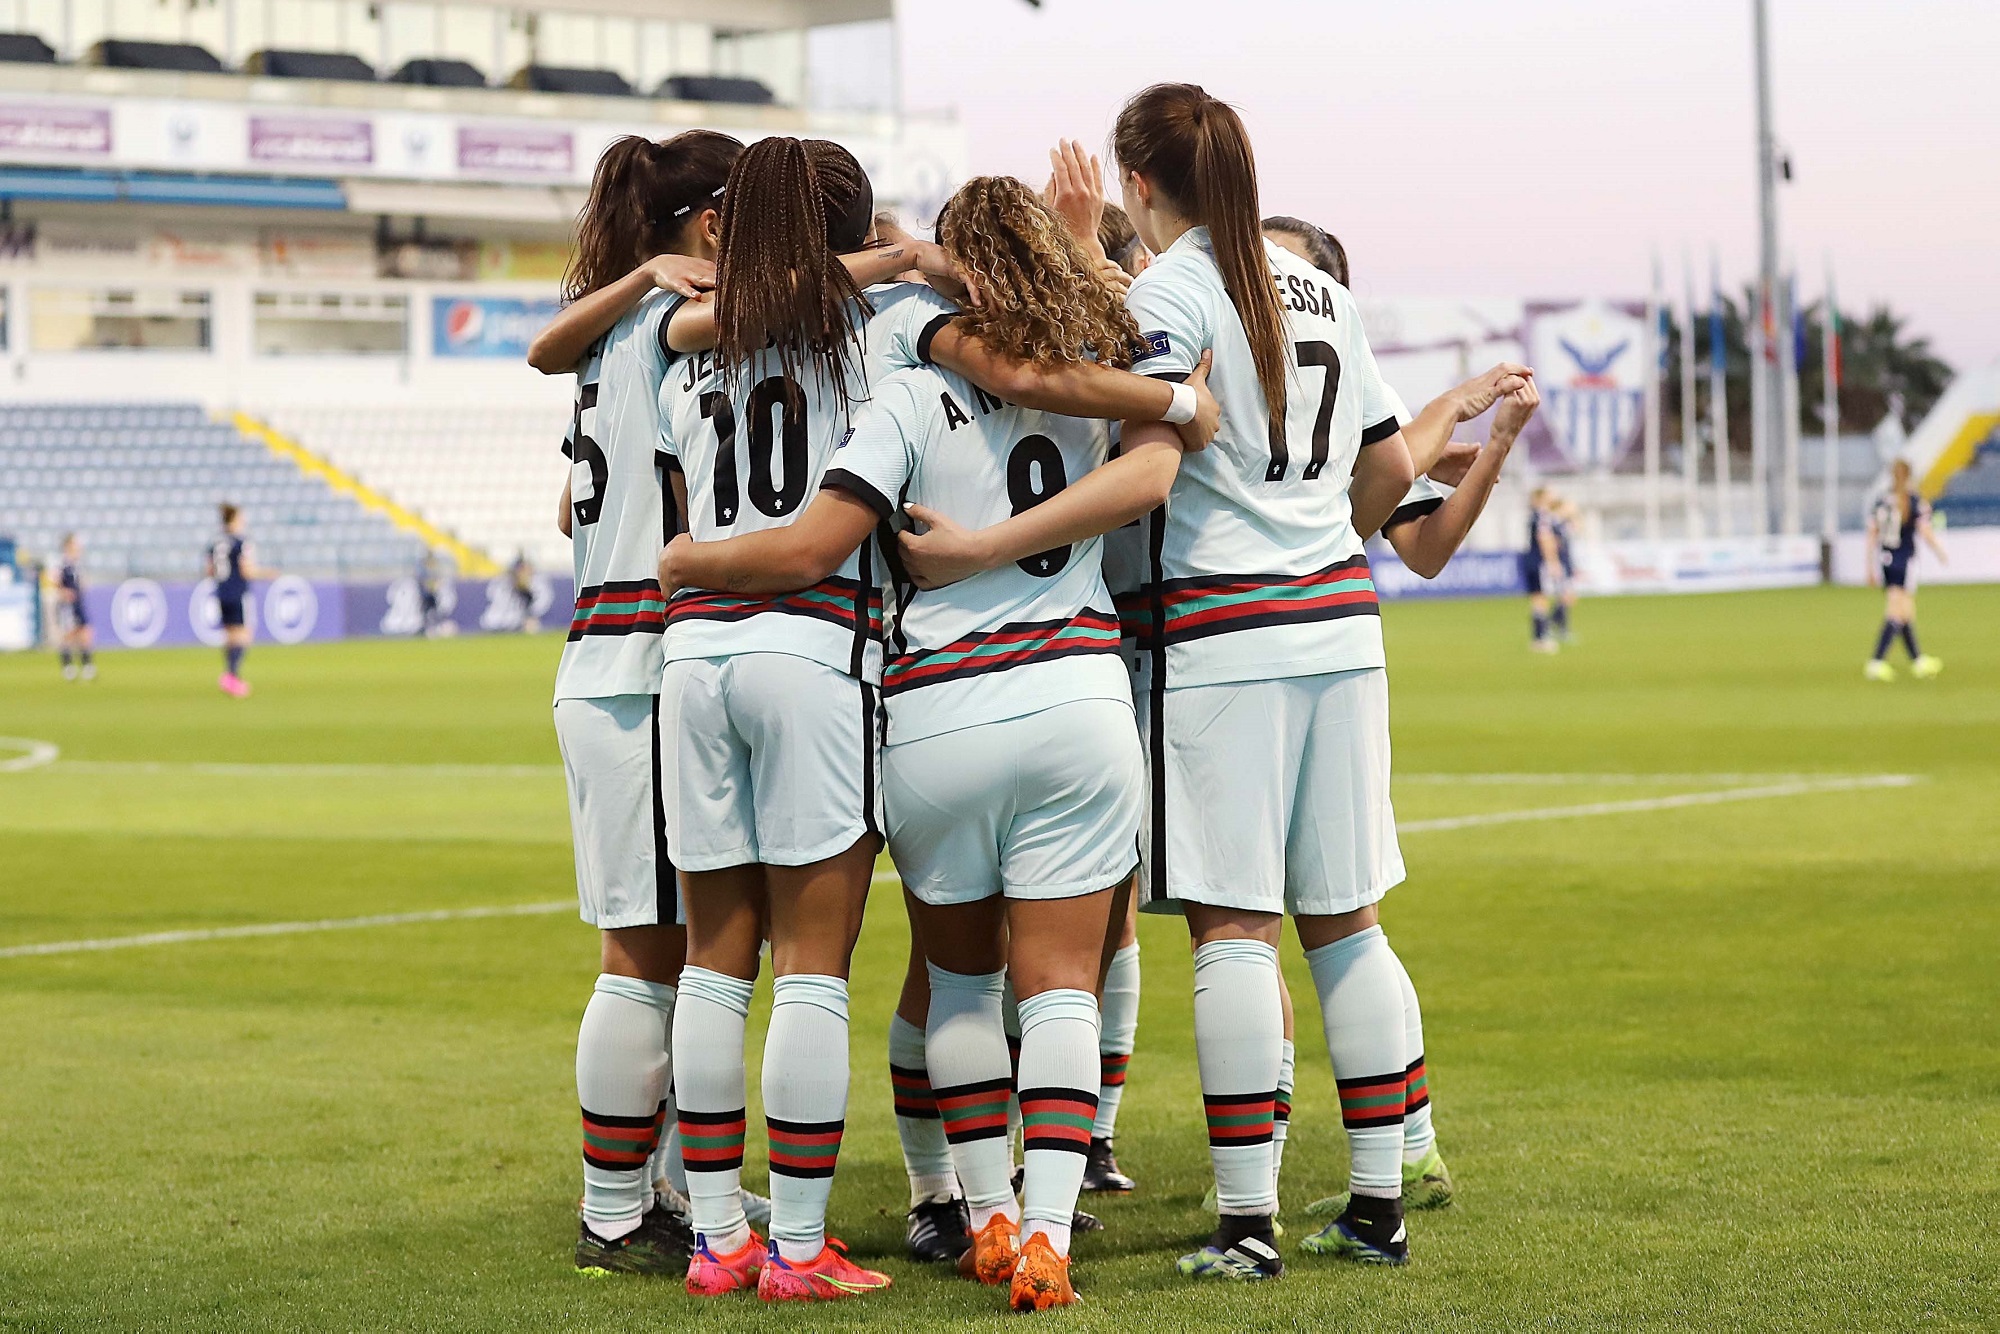 Apesar da vitória, Portugal vai ter de disputar o playoff de apuramento para o Europeu de Futebol Feminino de 2022.